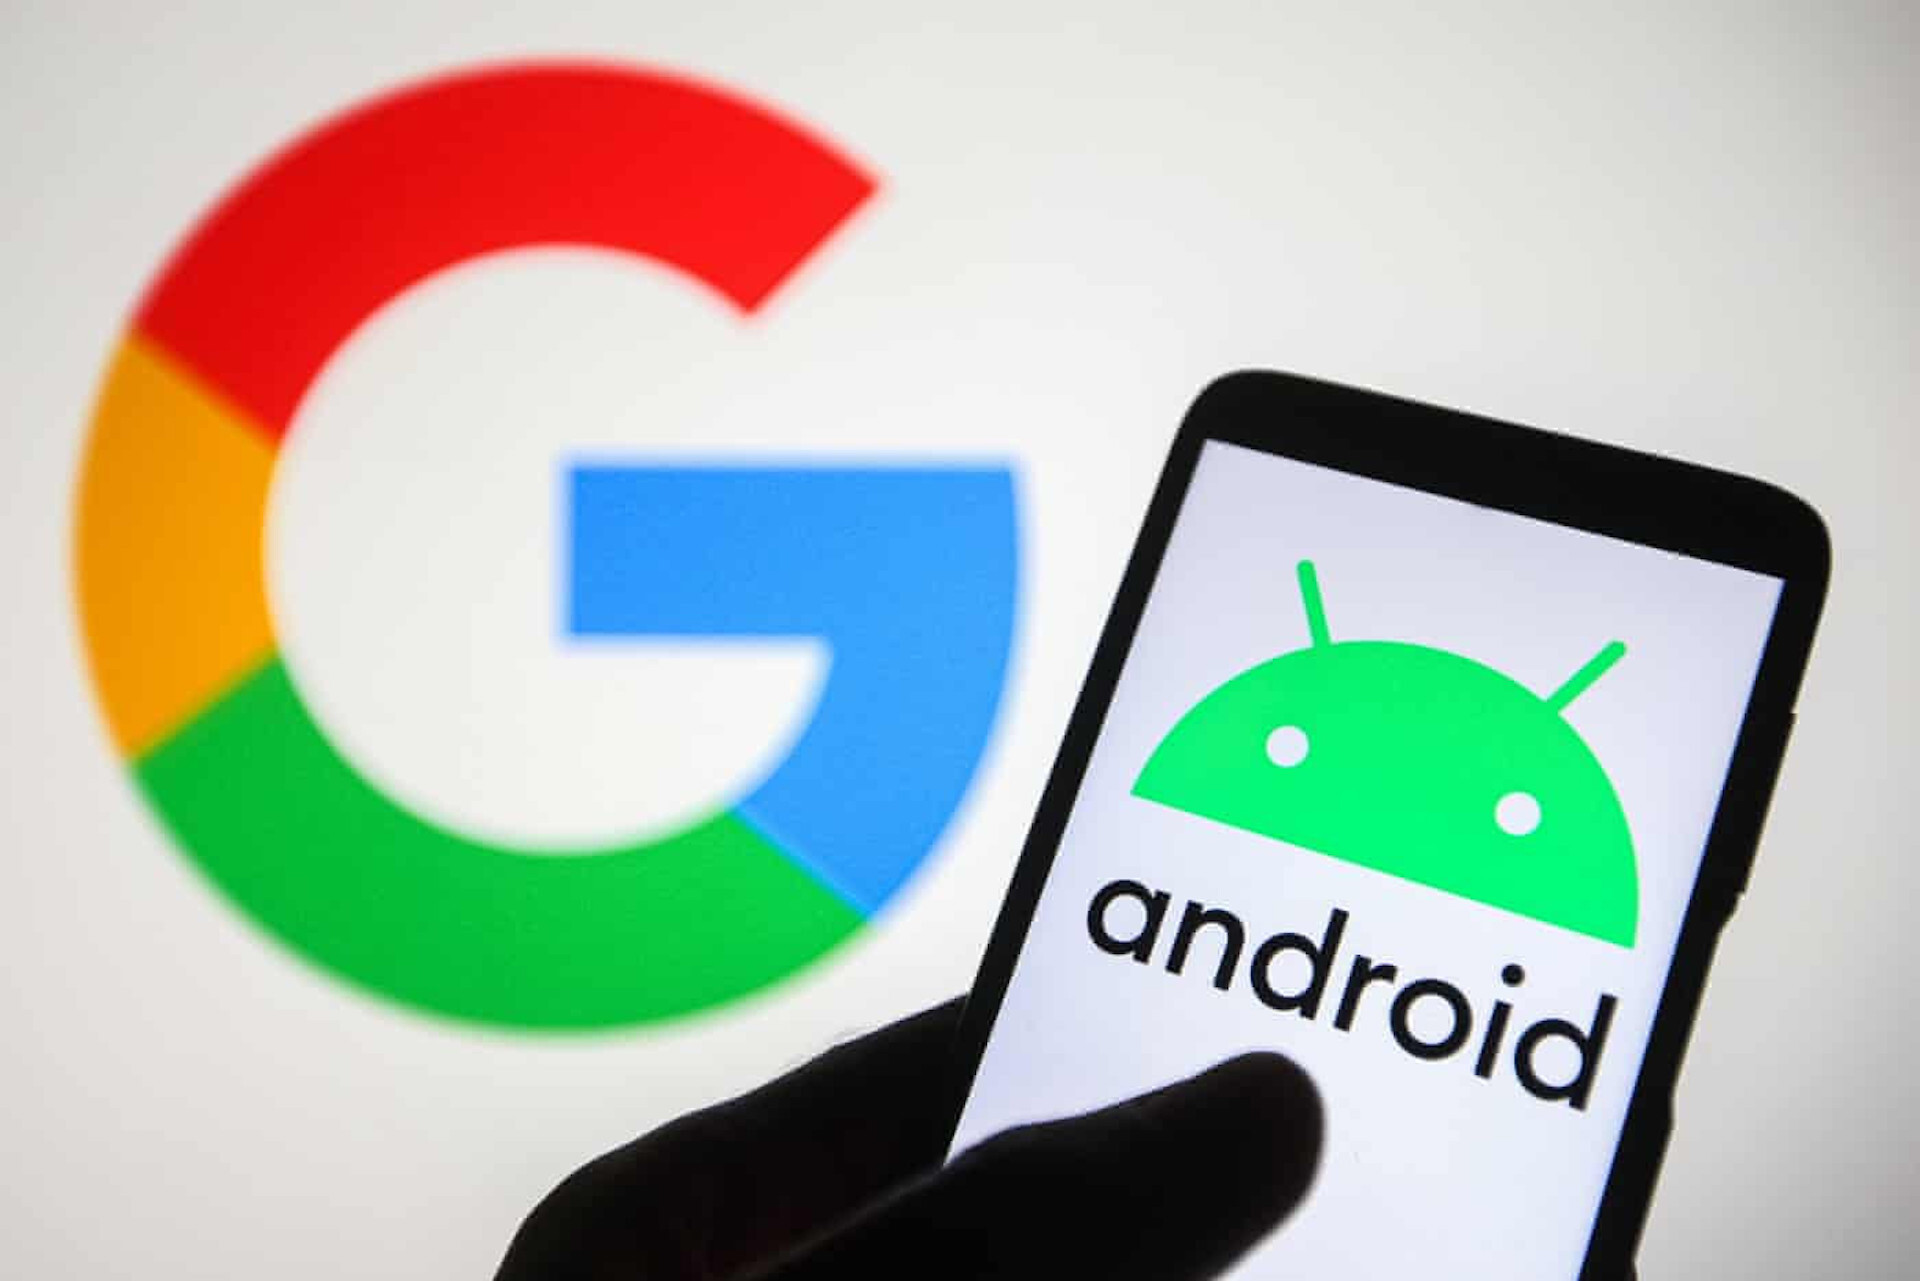 Google thử nghiệm phương thức thanh toán mới cho người dùng Android - 1